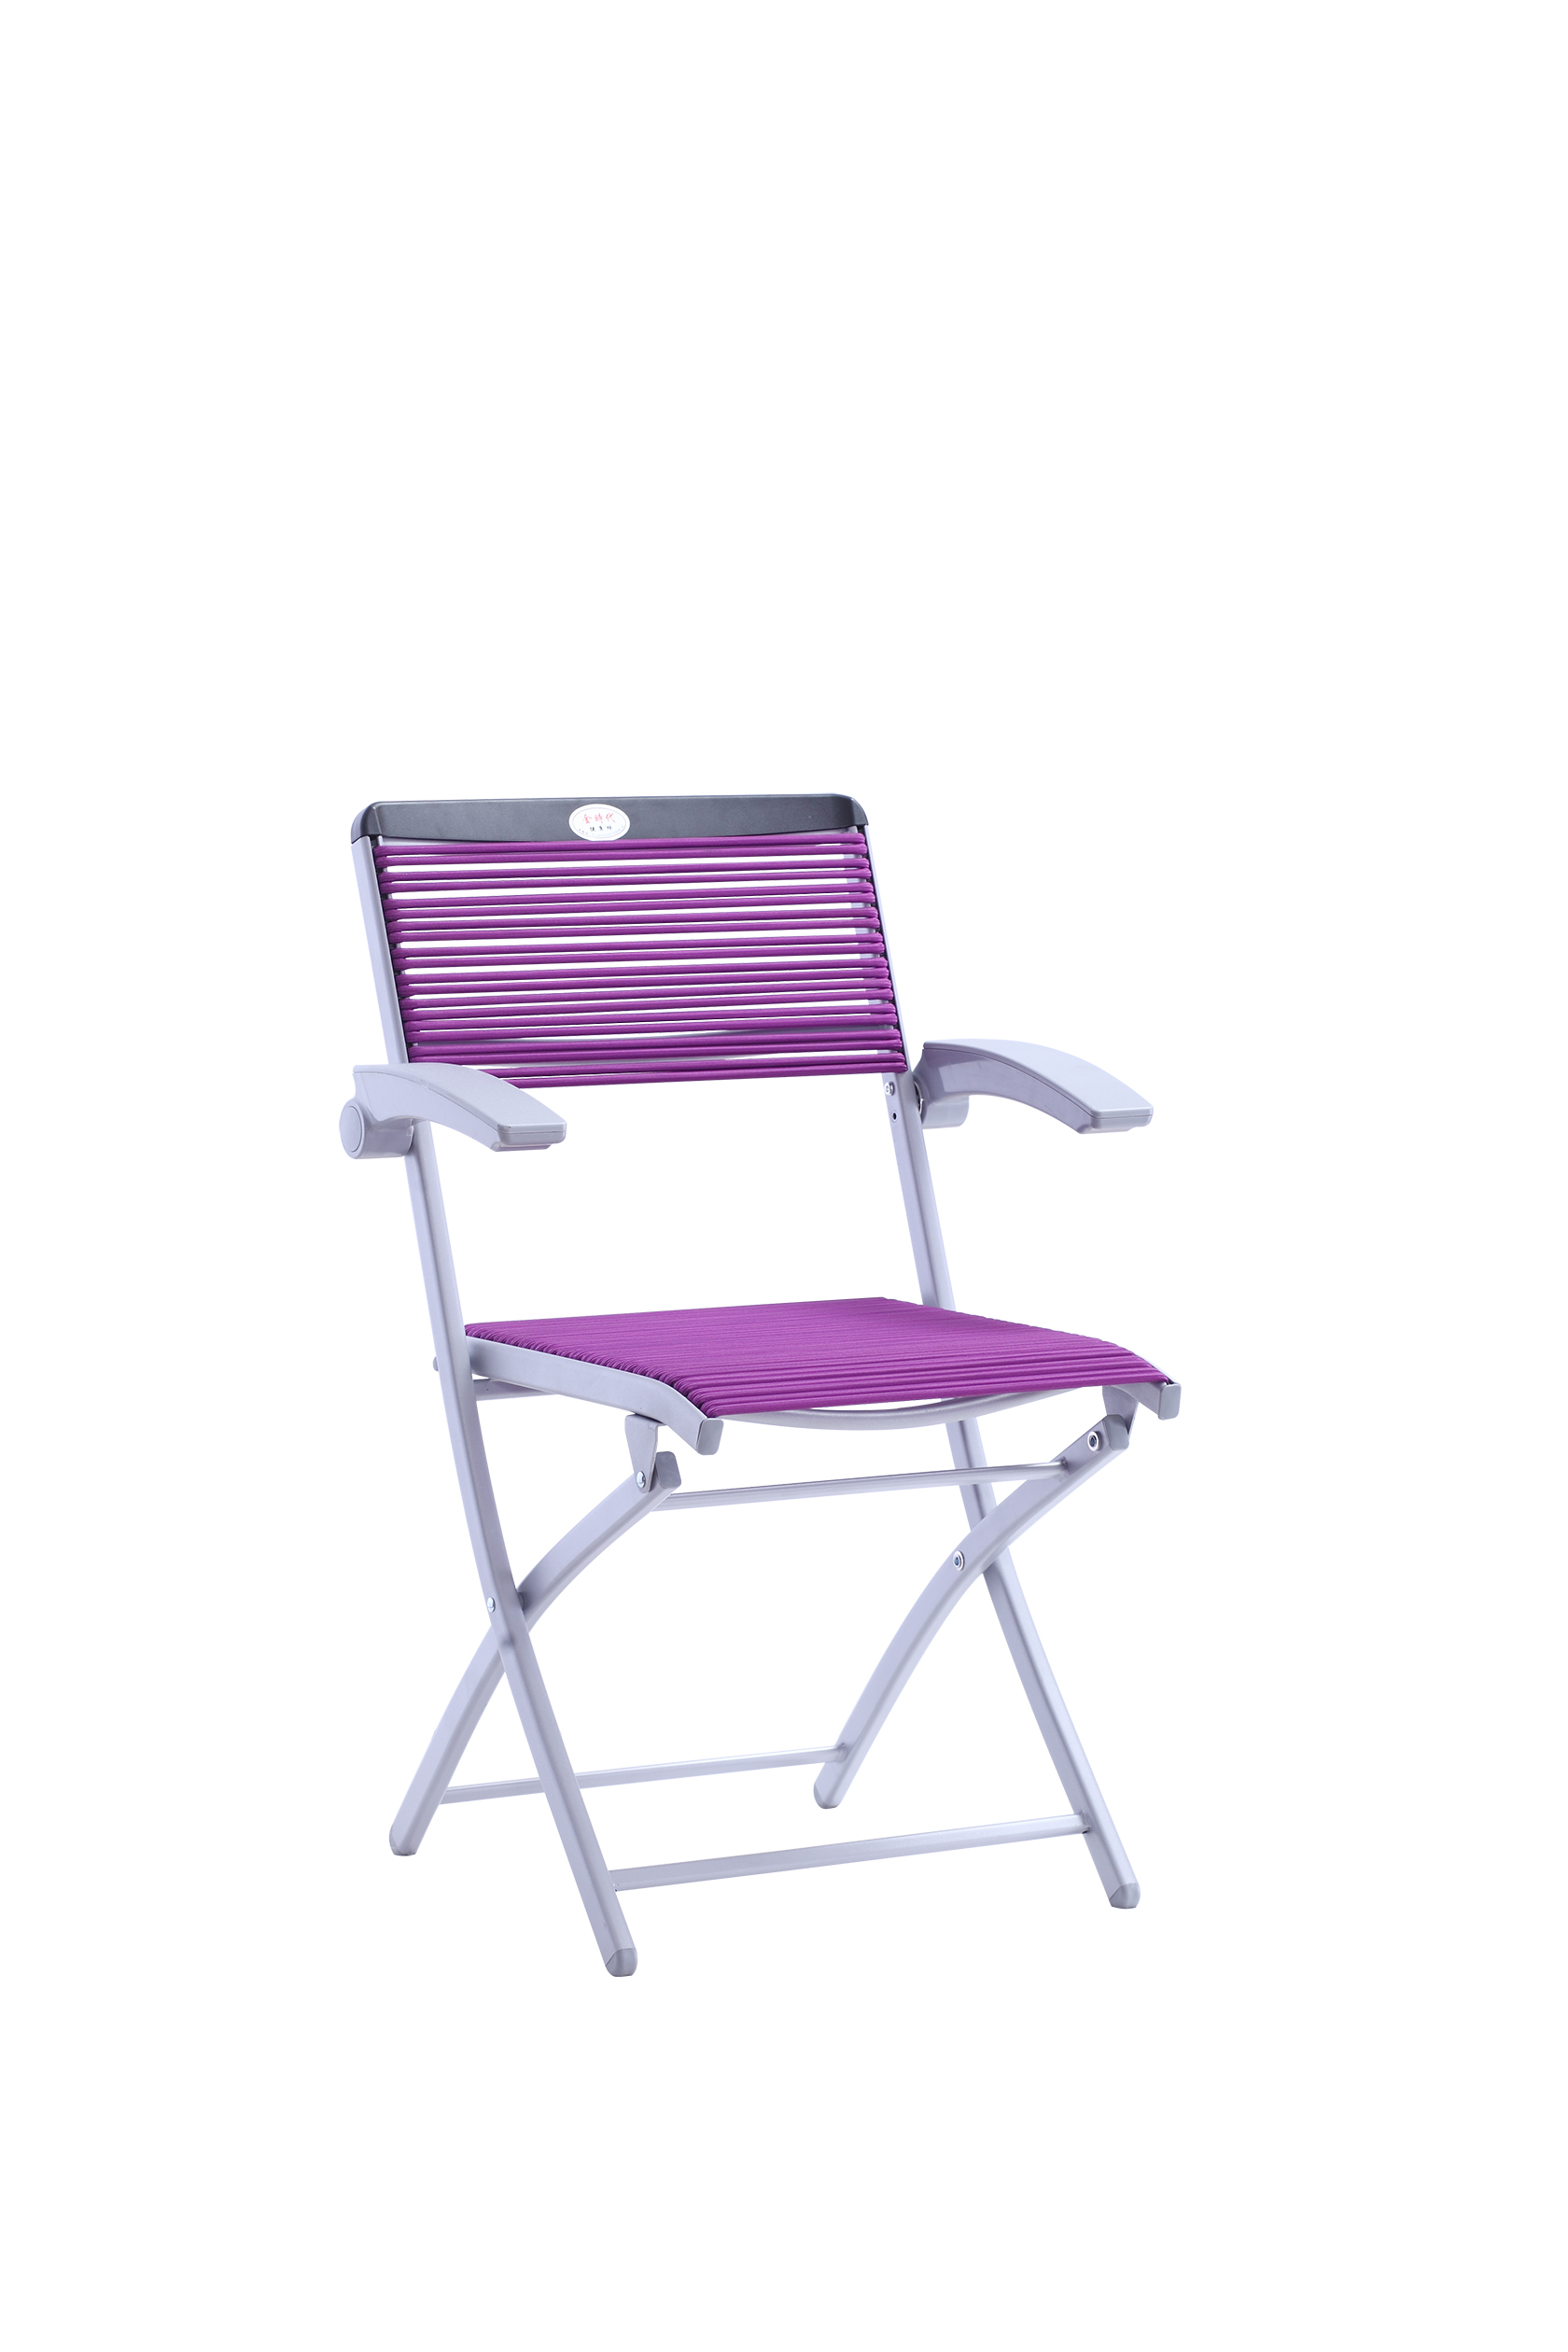 YG7032-3A特价健康椅办公椅 家用餐桌椅户外折叠椅可定制